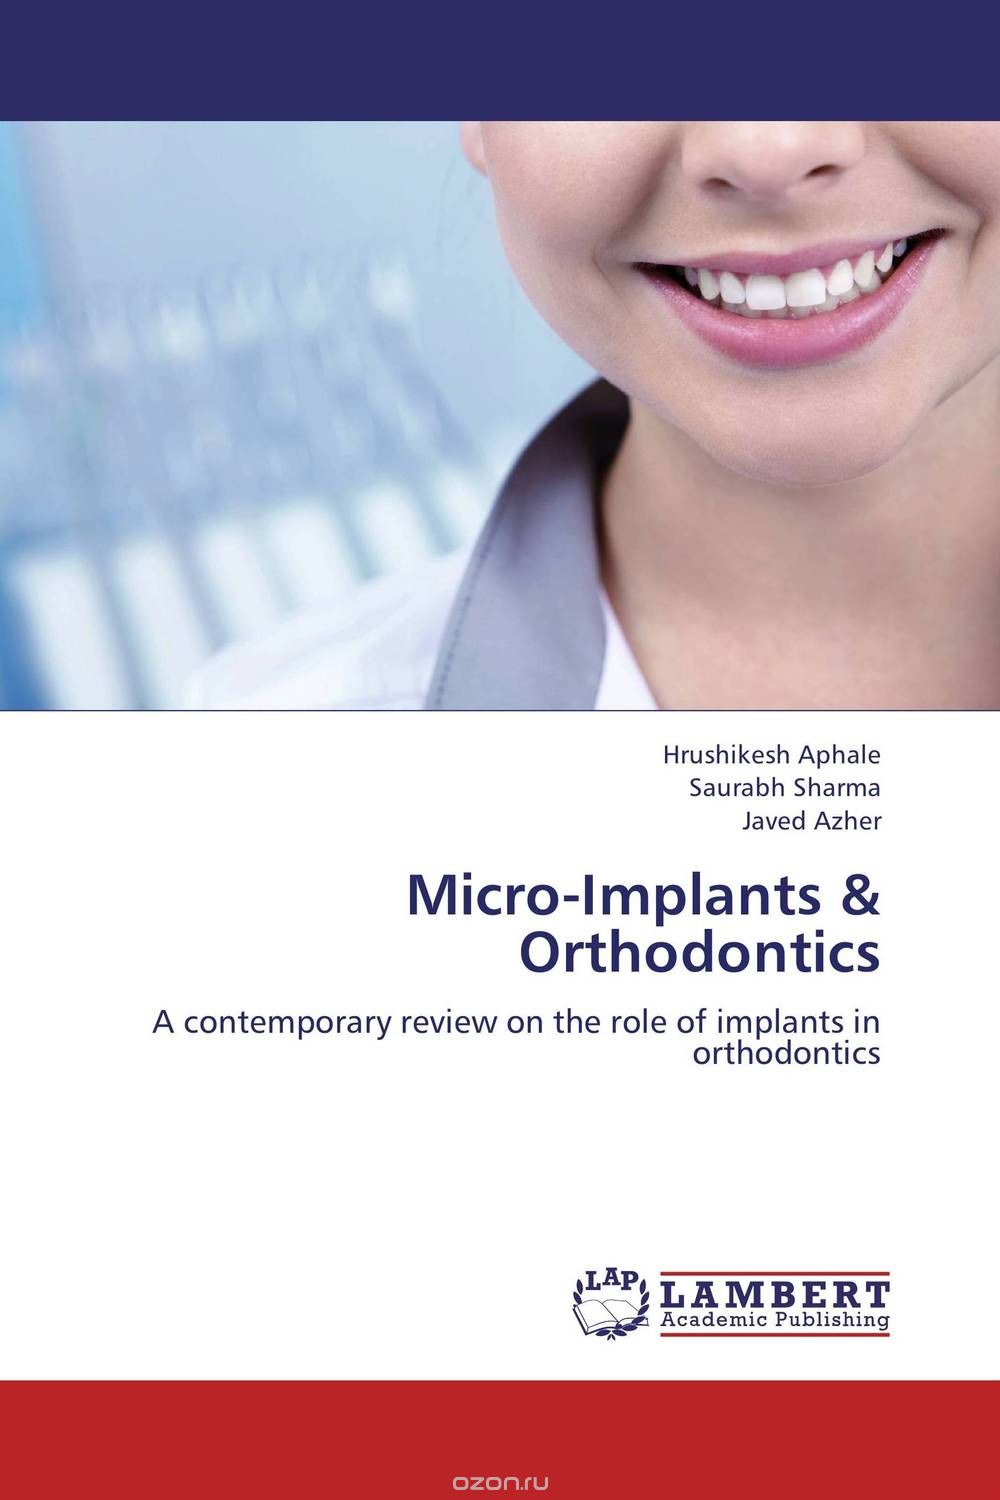 Скачать книгу "Micro-Implants & Orthodontics"